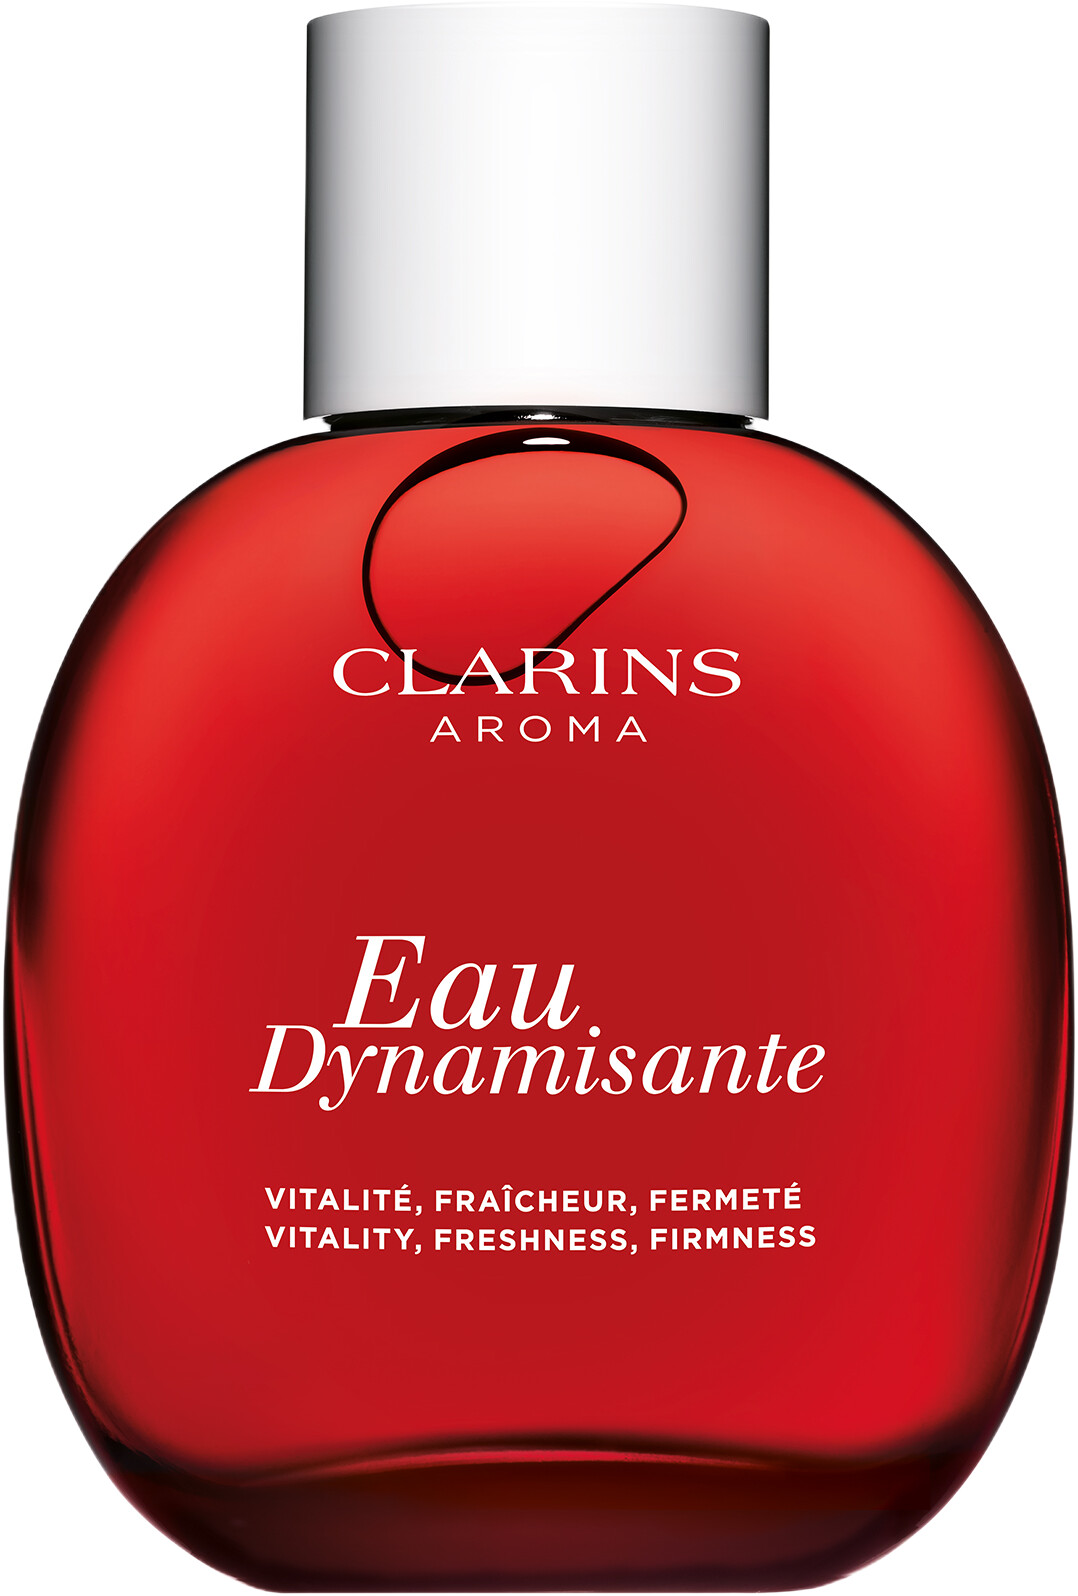 Clarins Eau Dynamisante Treatment Fragrance Spray 100ml